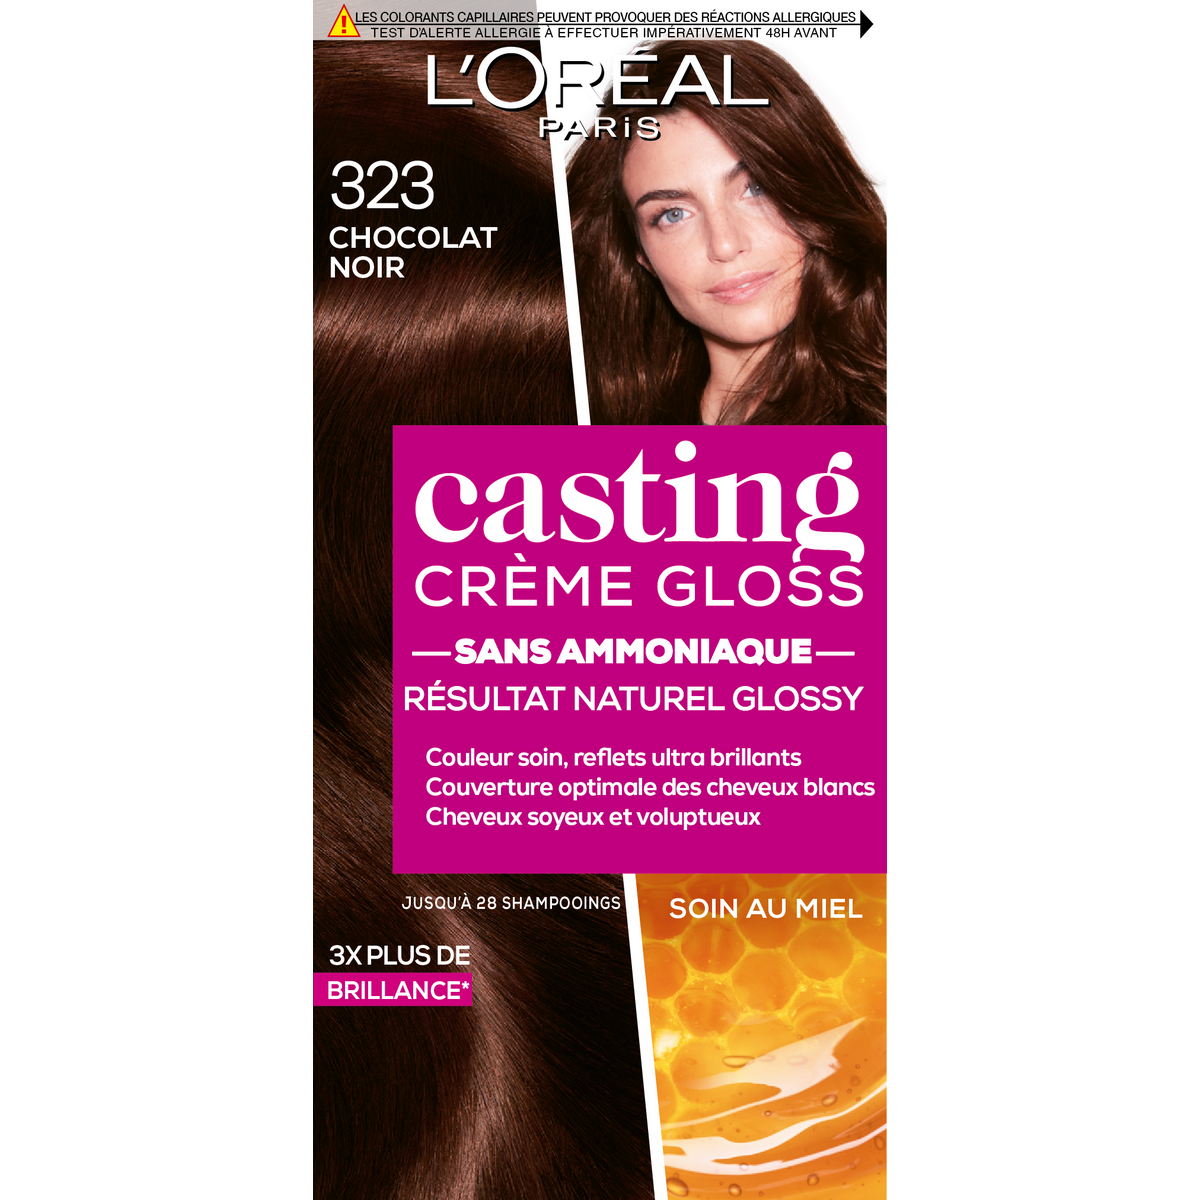 L'OREAL Casting crème gloss coloration sans ammoniaque 323 chocolat noir 1 kit